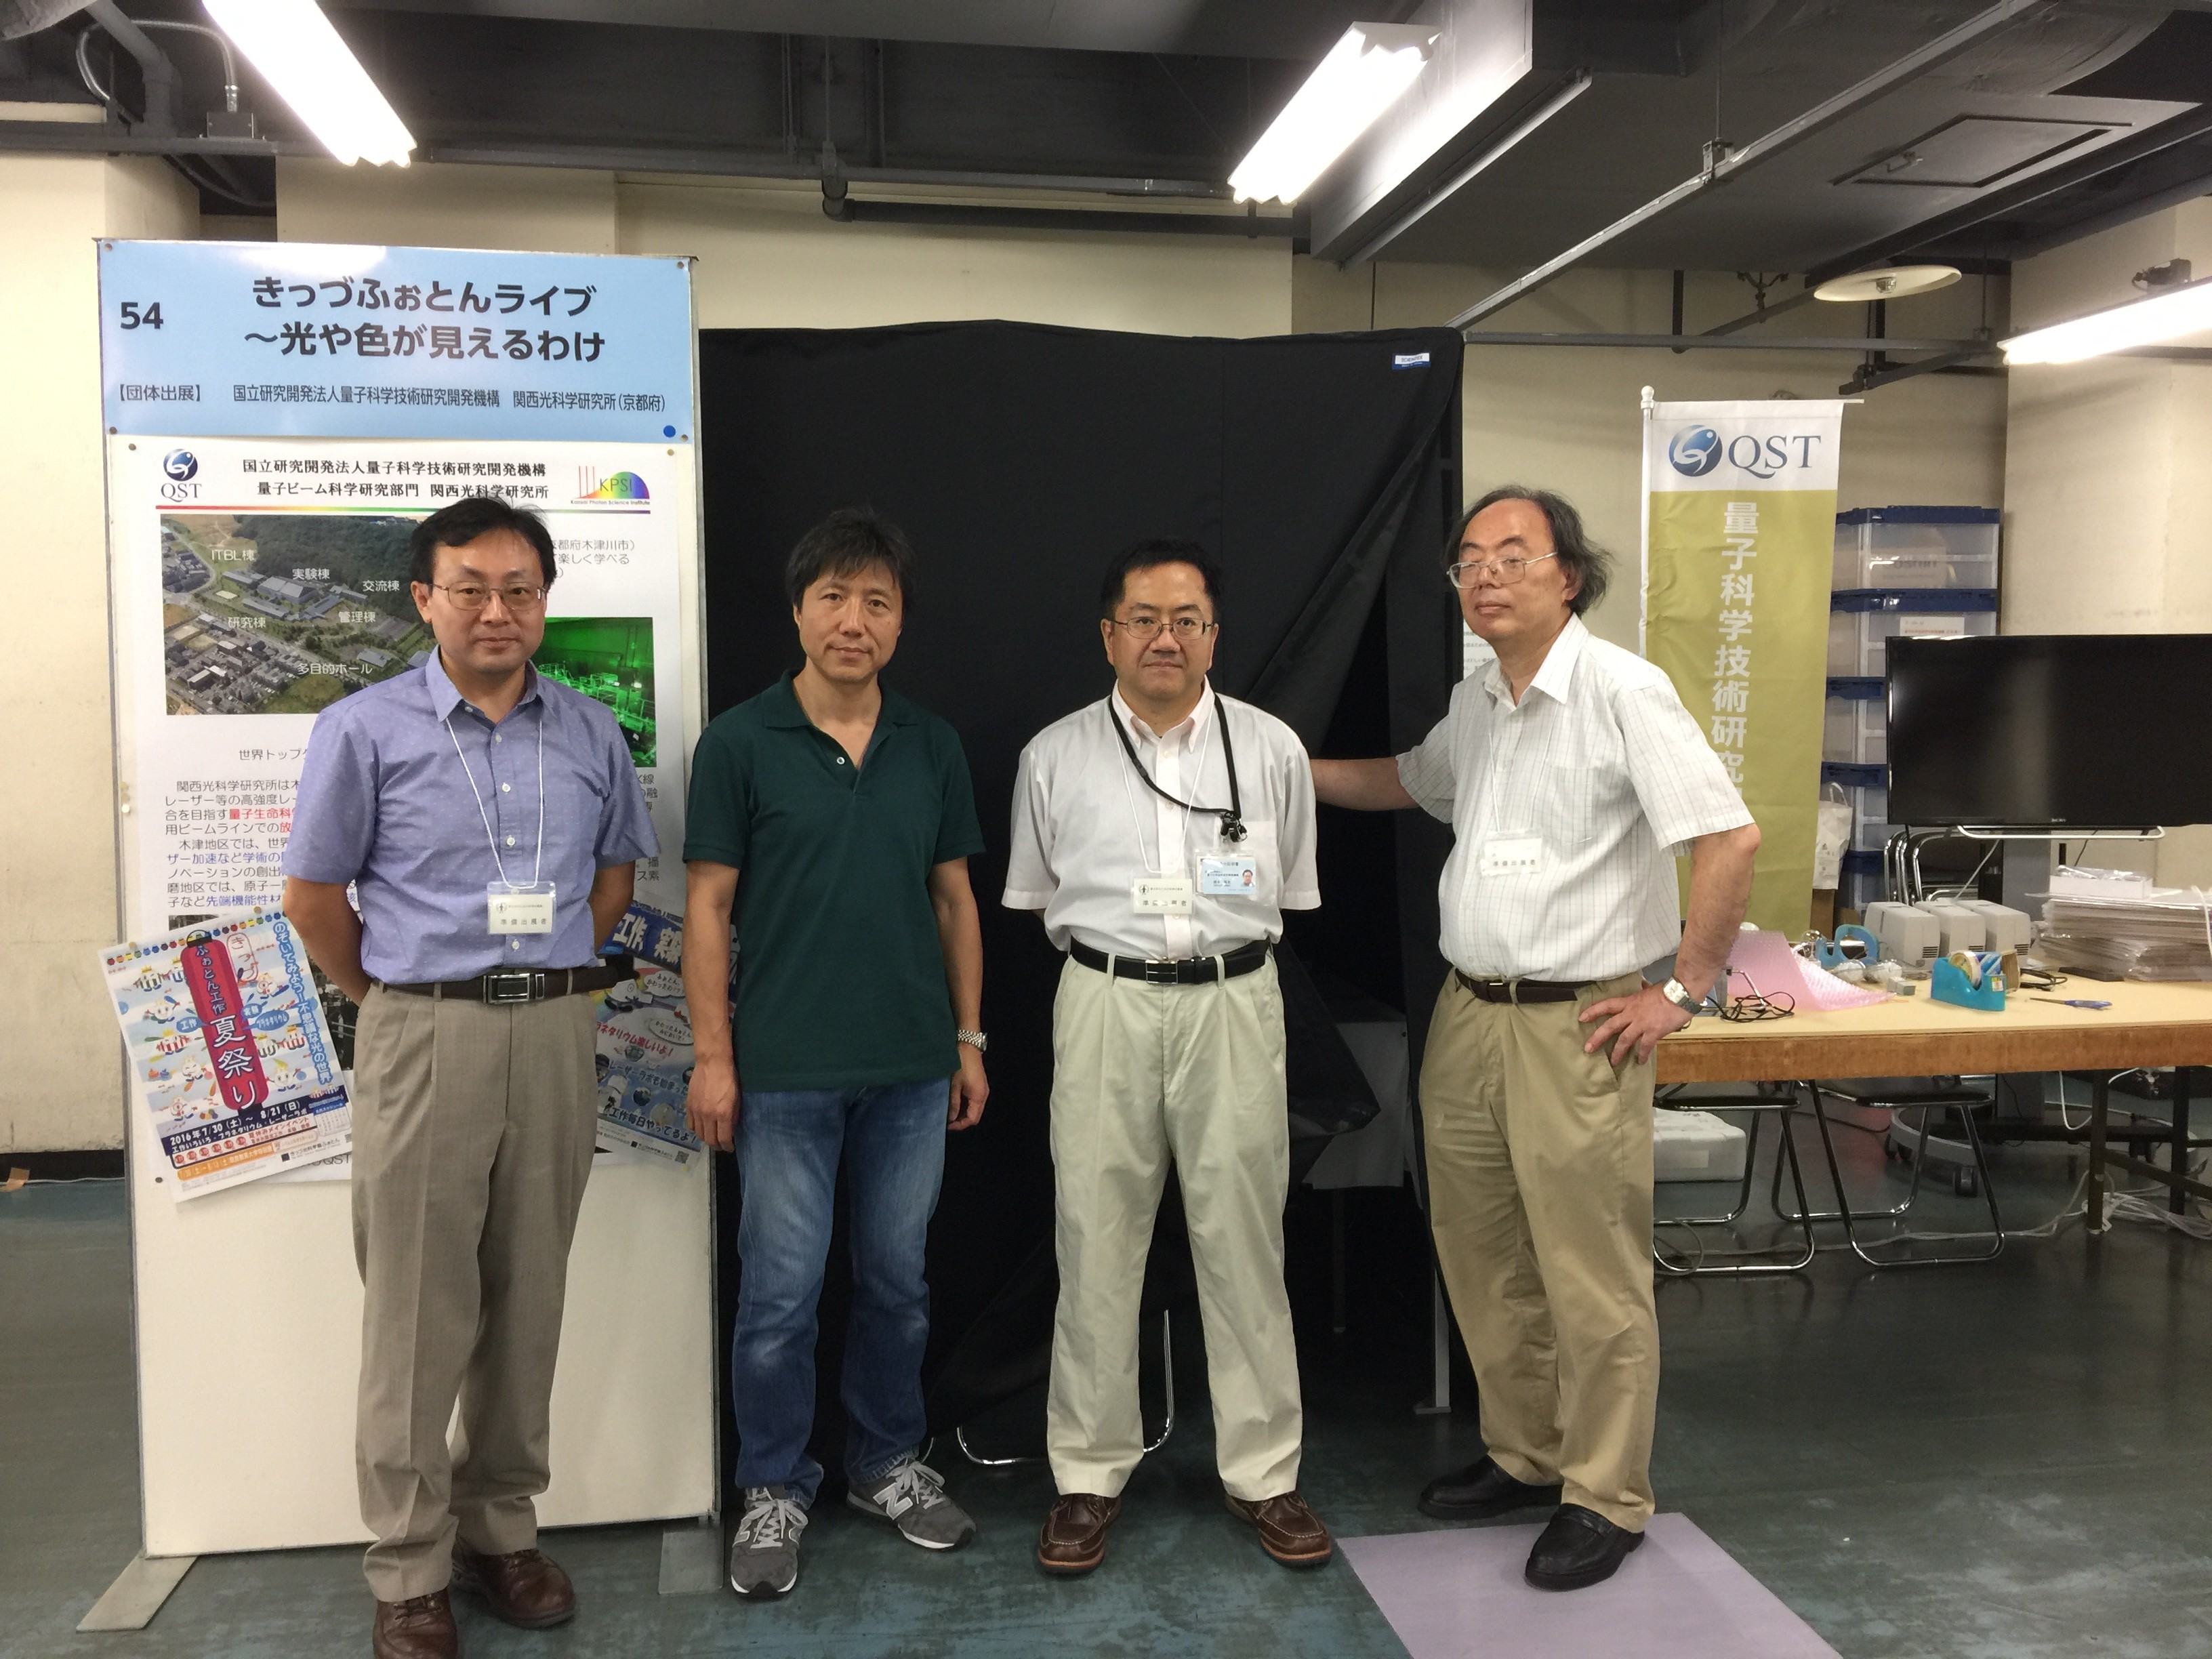 関西研からの4名の参加者の写真